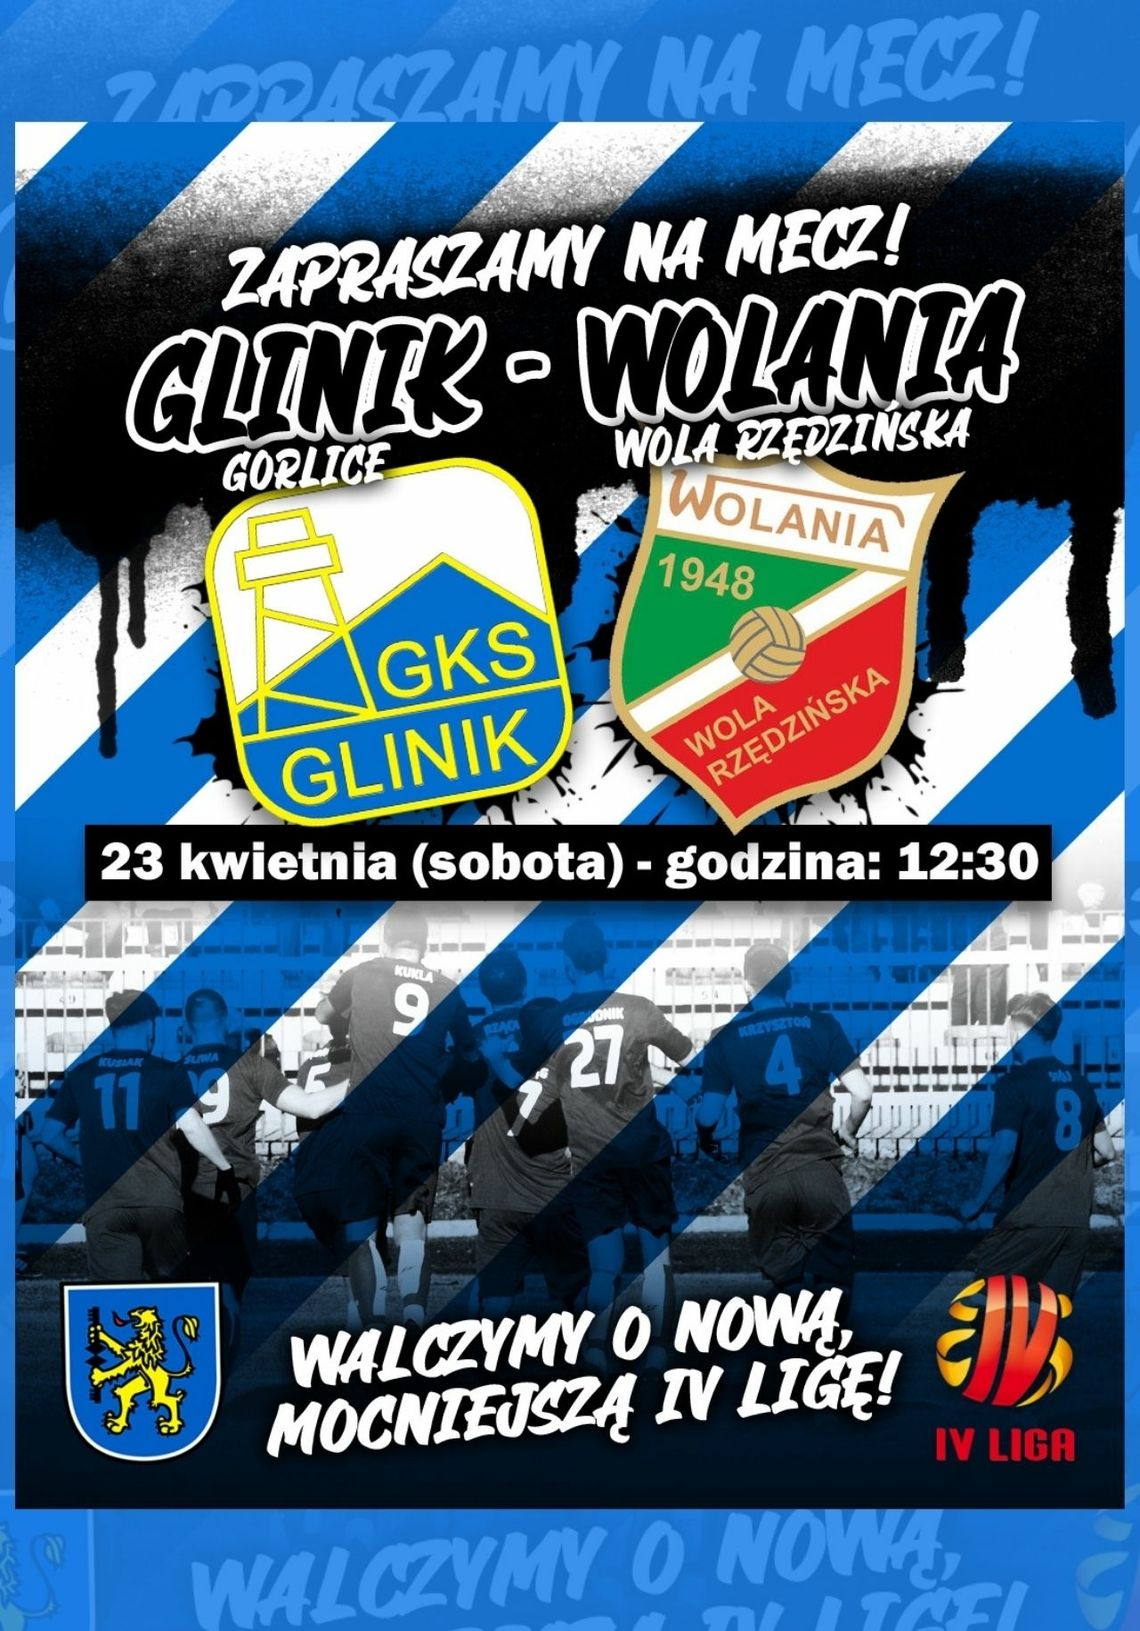 GKS Glinik Gorlice vs Wolania Wola Rzędzińska | zapowiedzi imprez – halogorlice.info